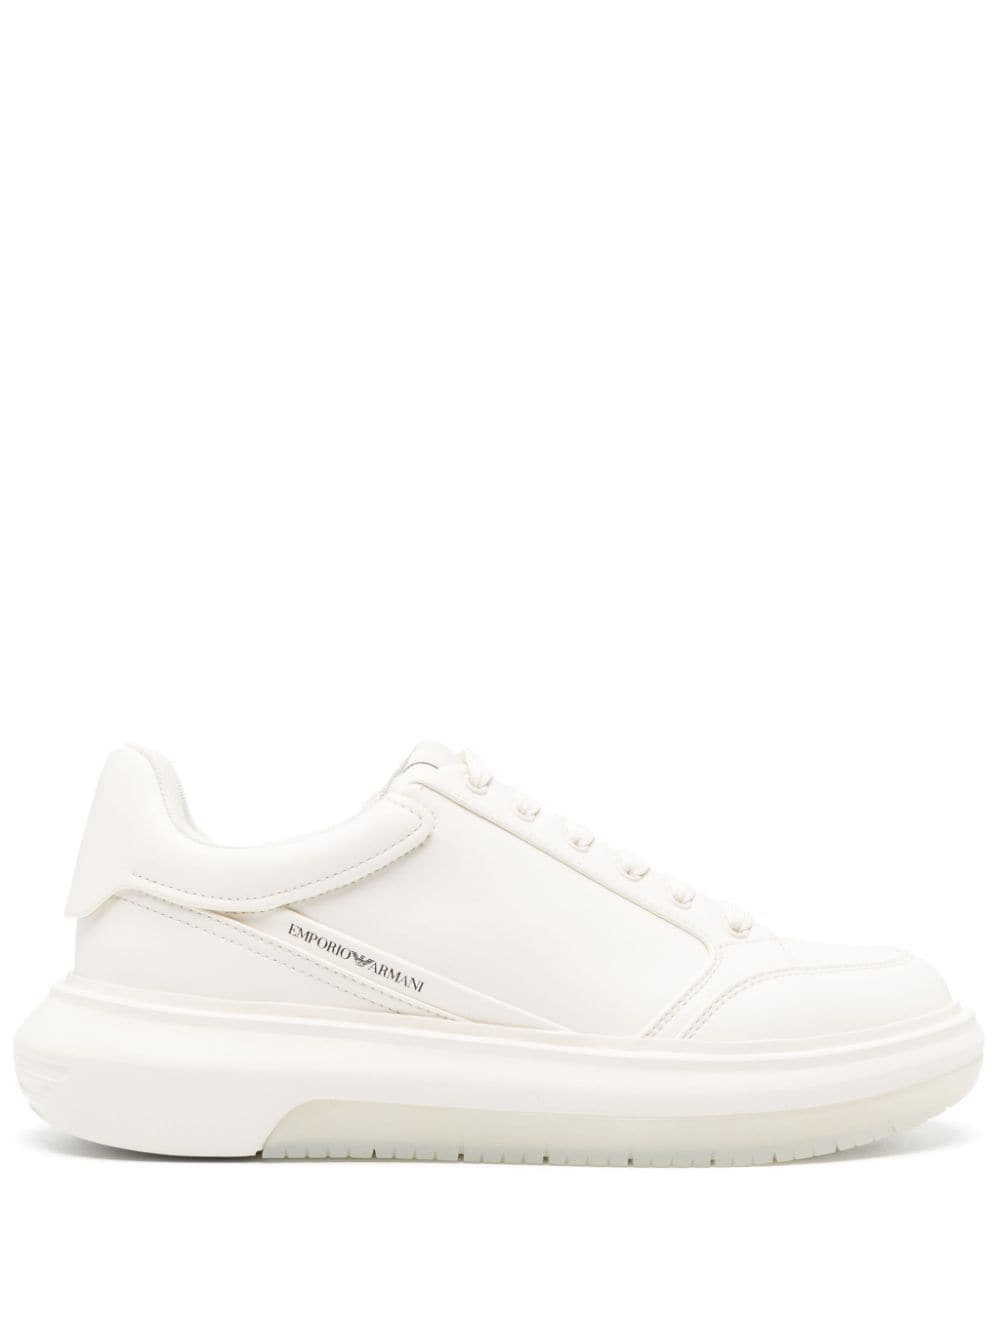 Emporio Armani White Printed Sneakers In Neutrals